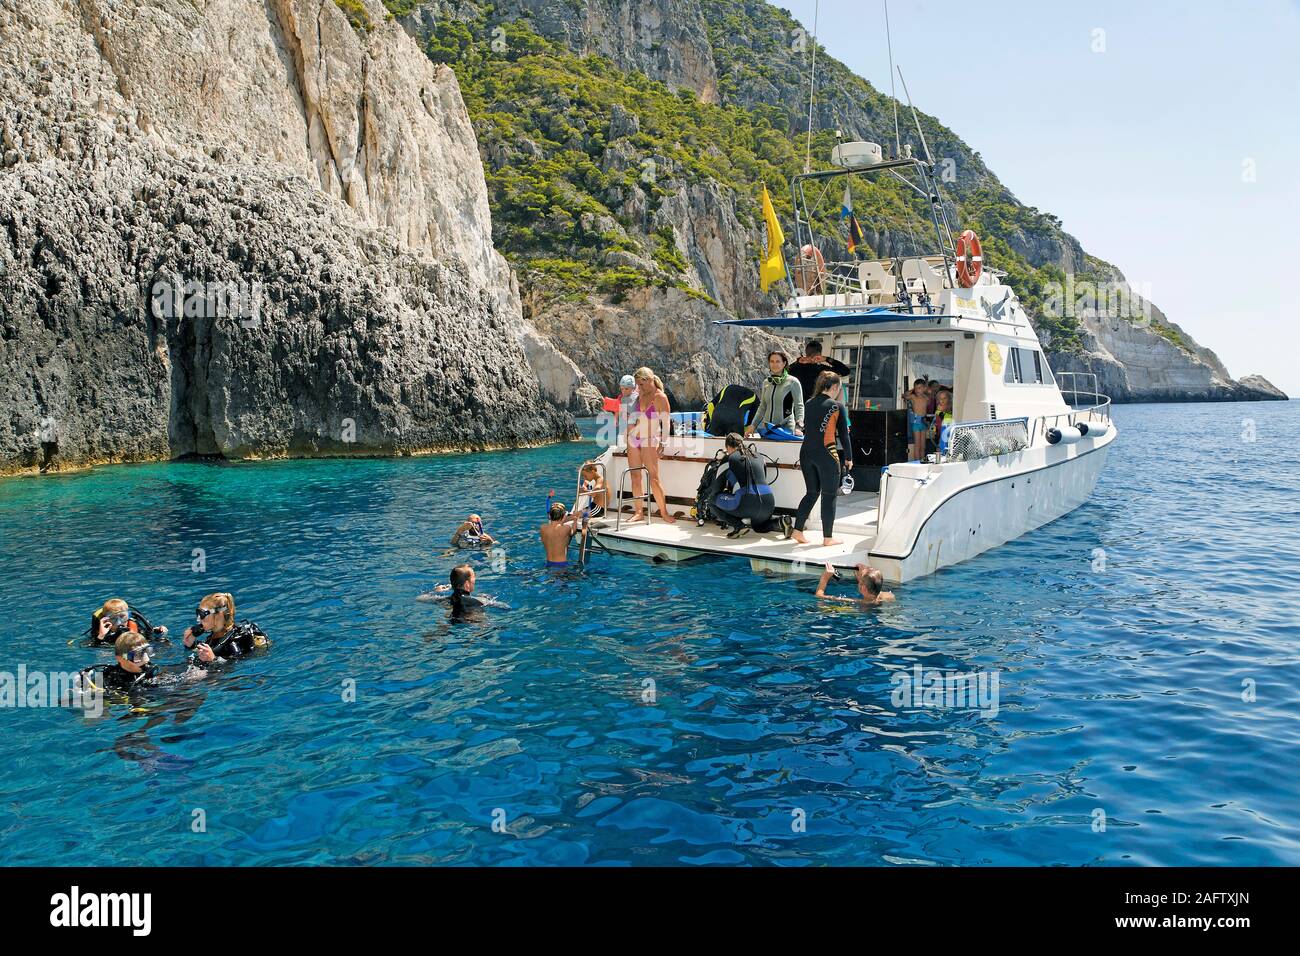 Plongée sous marine dans l'eau au bateau de plongée, l'île de Zakynthos, Grèce Banque D'Images